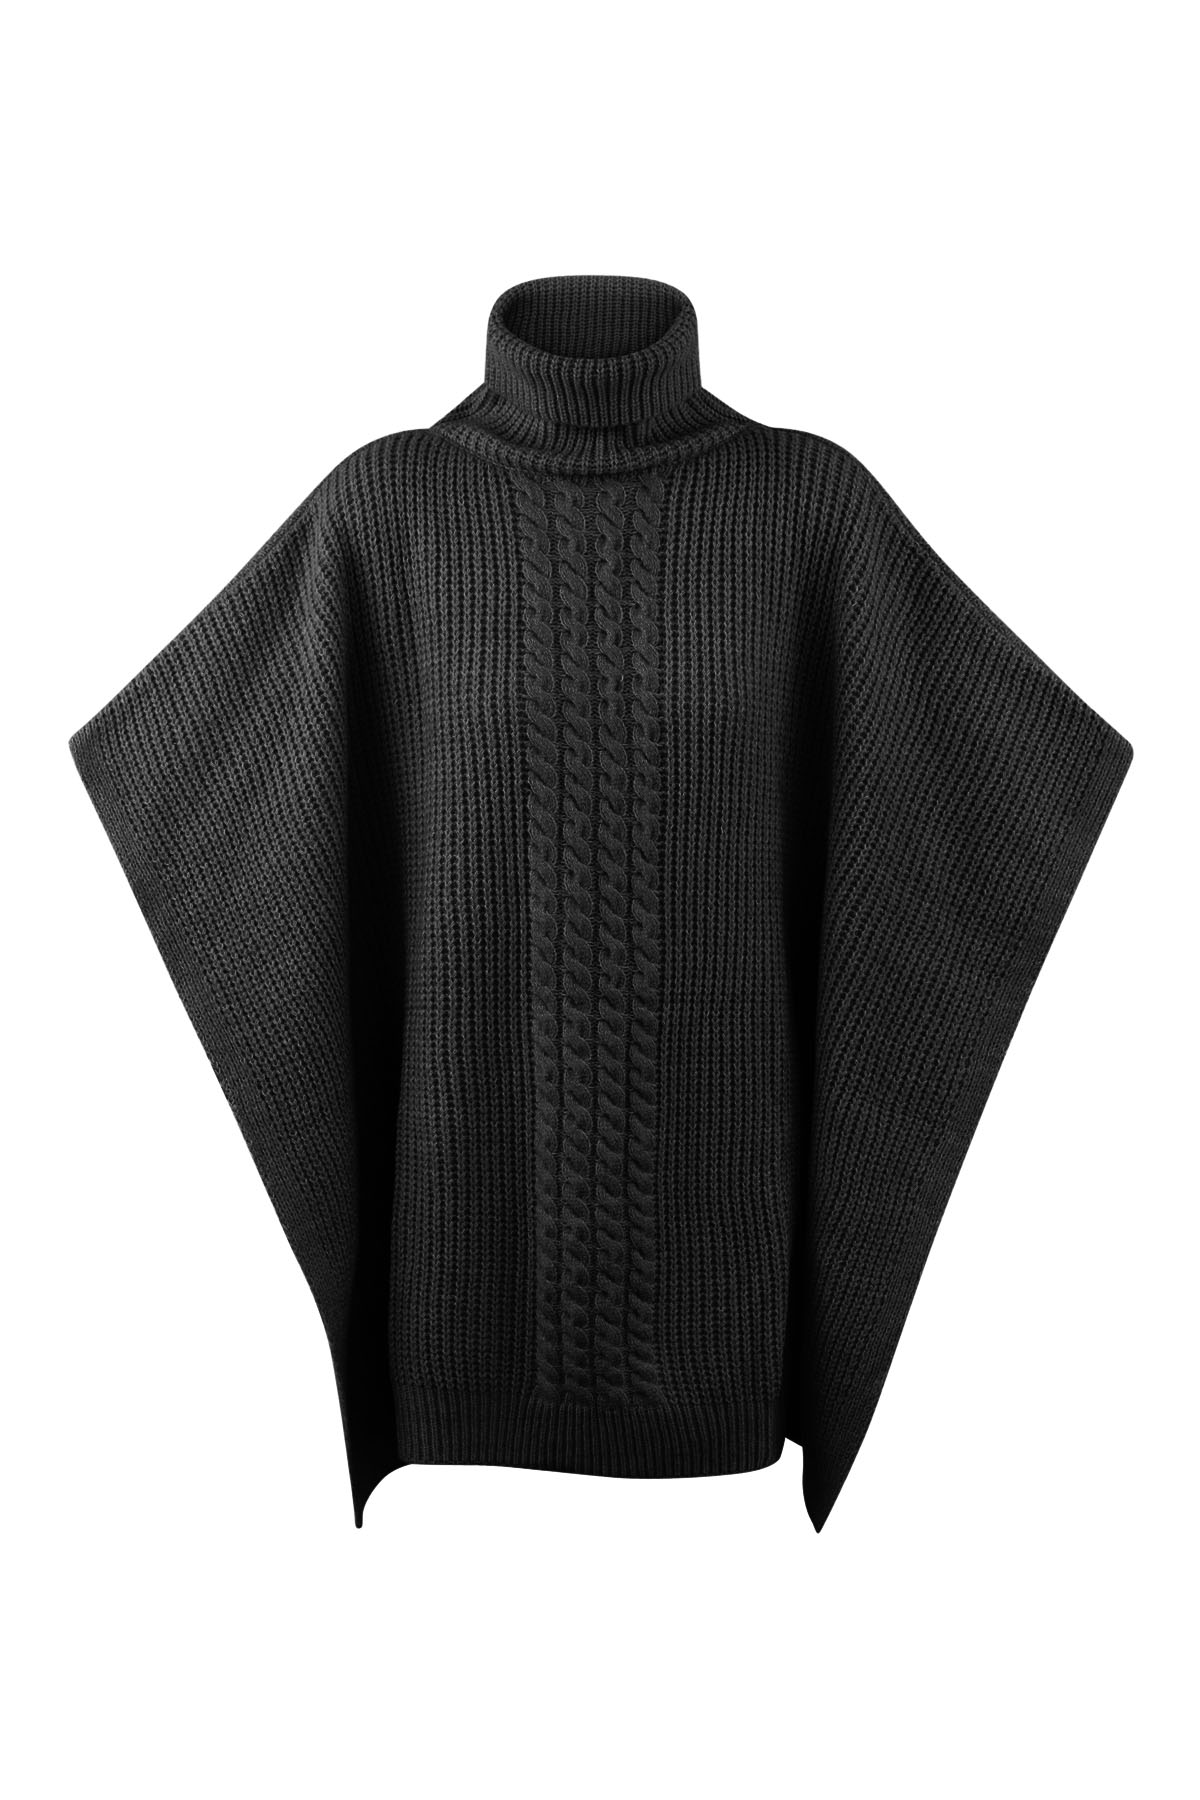 Poncho tricoté uni - noir 